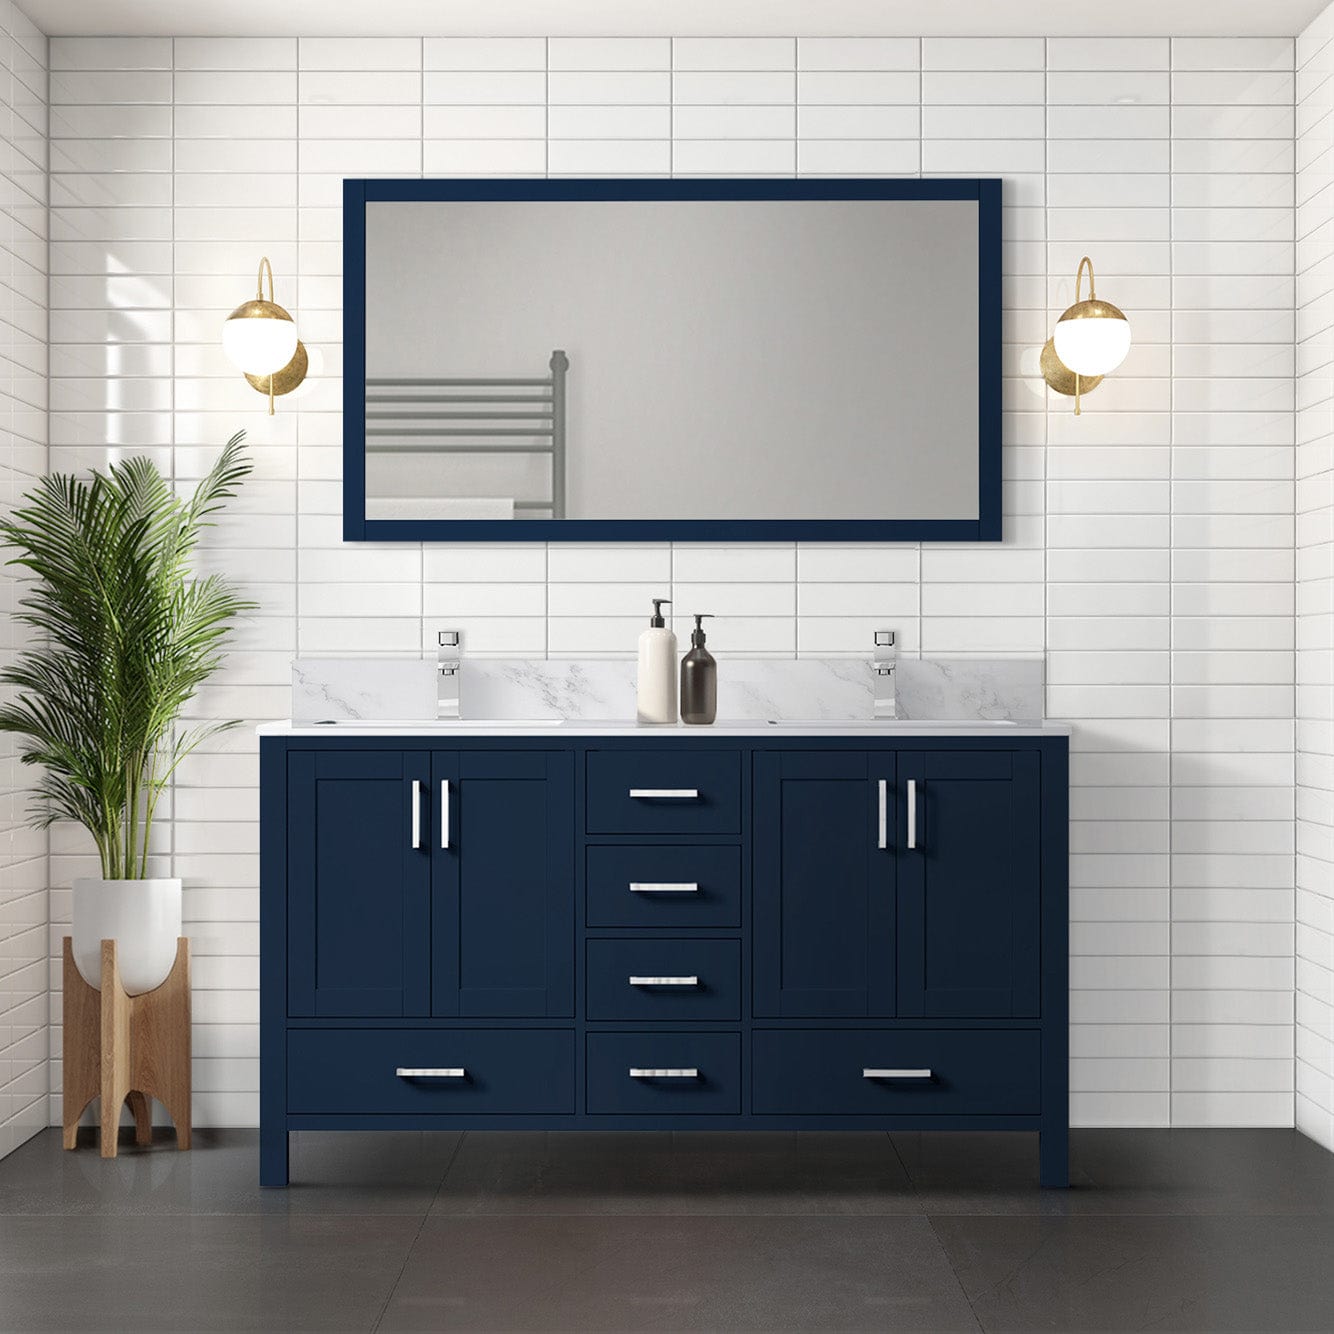 Lexora Bathroom Vanity Navy Blue / Carrara Marble / No Mirror Big Sur 60" x 22" Double Bath Vanity